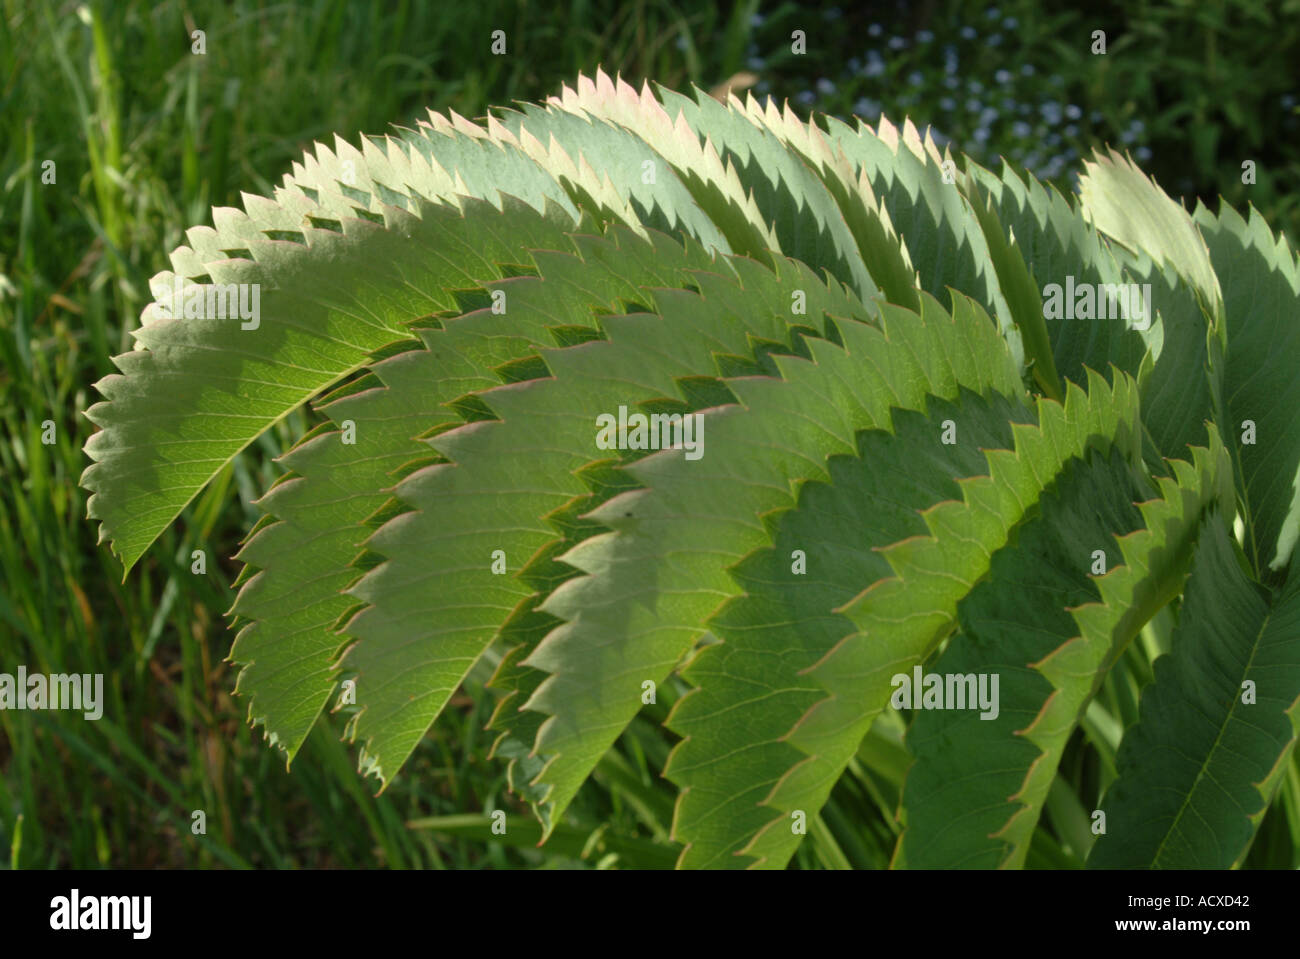 serrated leaves